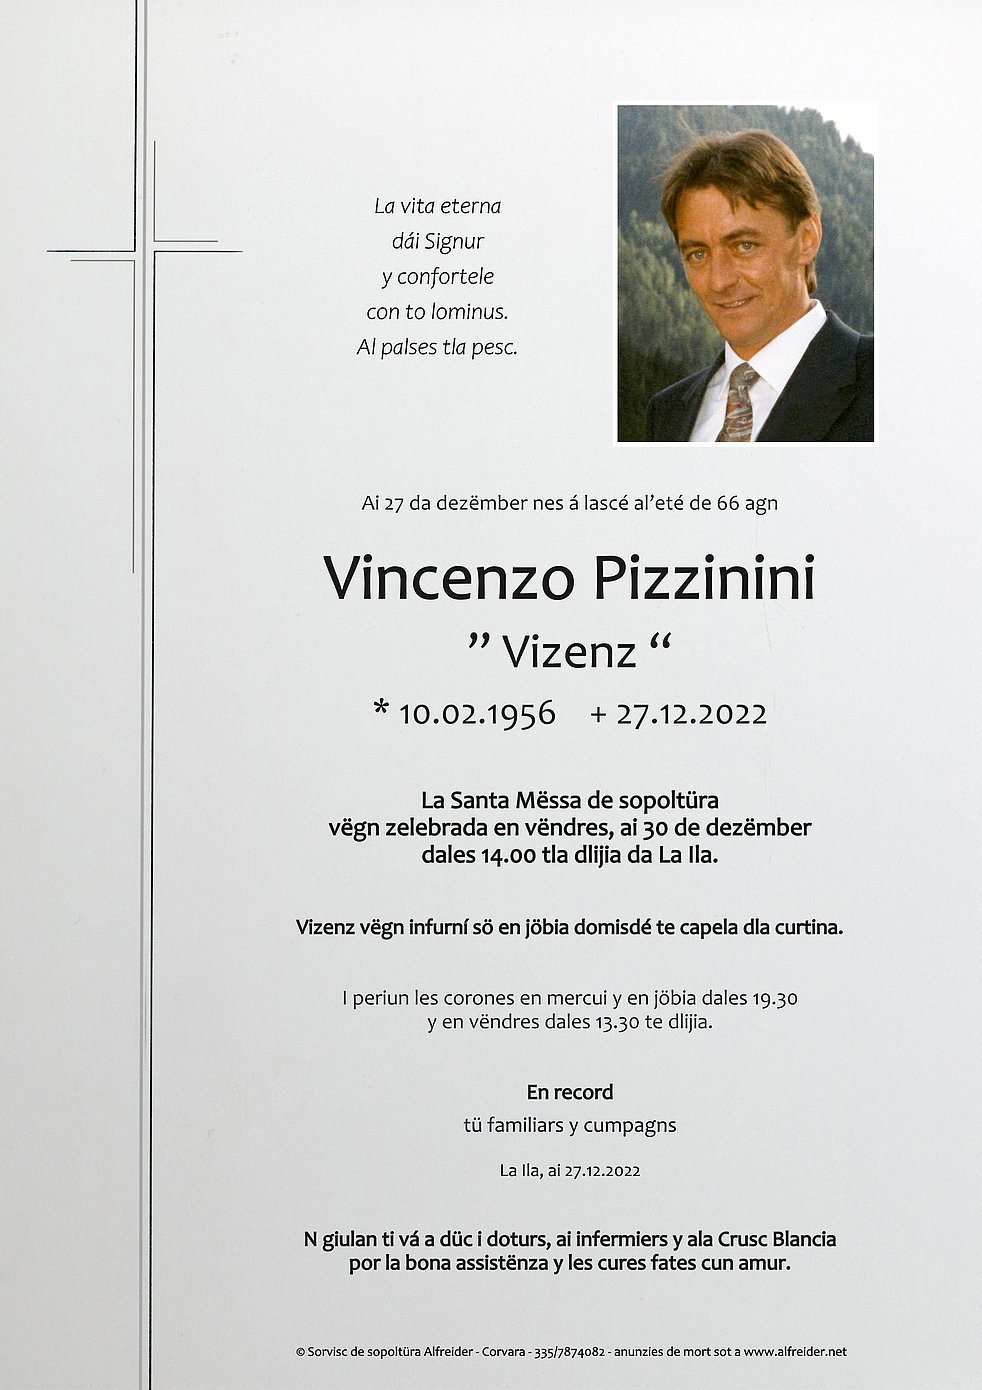 Vincenzo Pizzinini aus - Abtei Südtiroler - TrauerHilfe.it das Gedenkportal